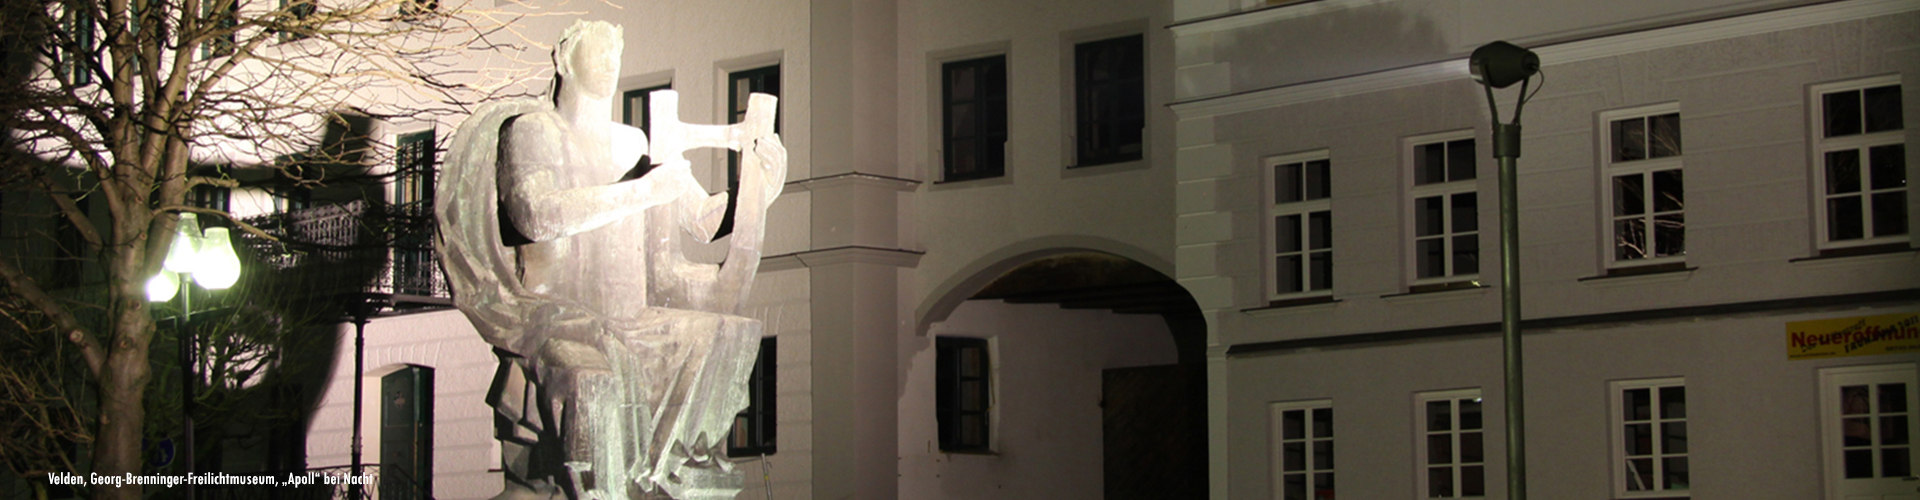 Georg-Brenninger-Freilichtmuseum, "Apoll" in Velden bei Nacht